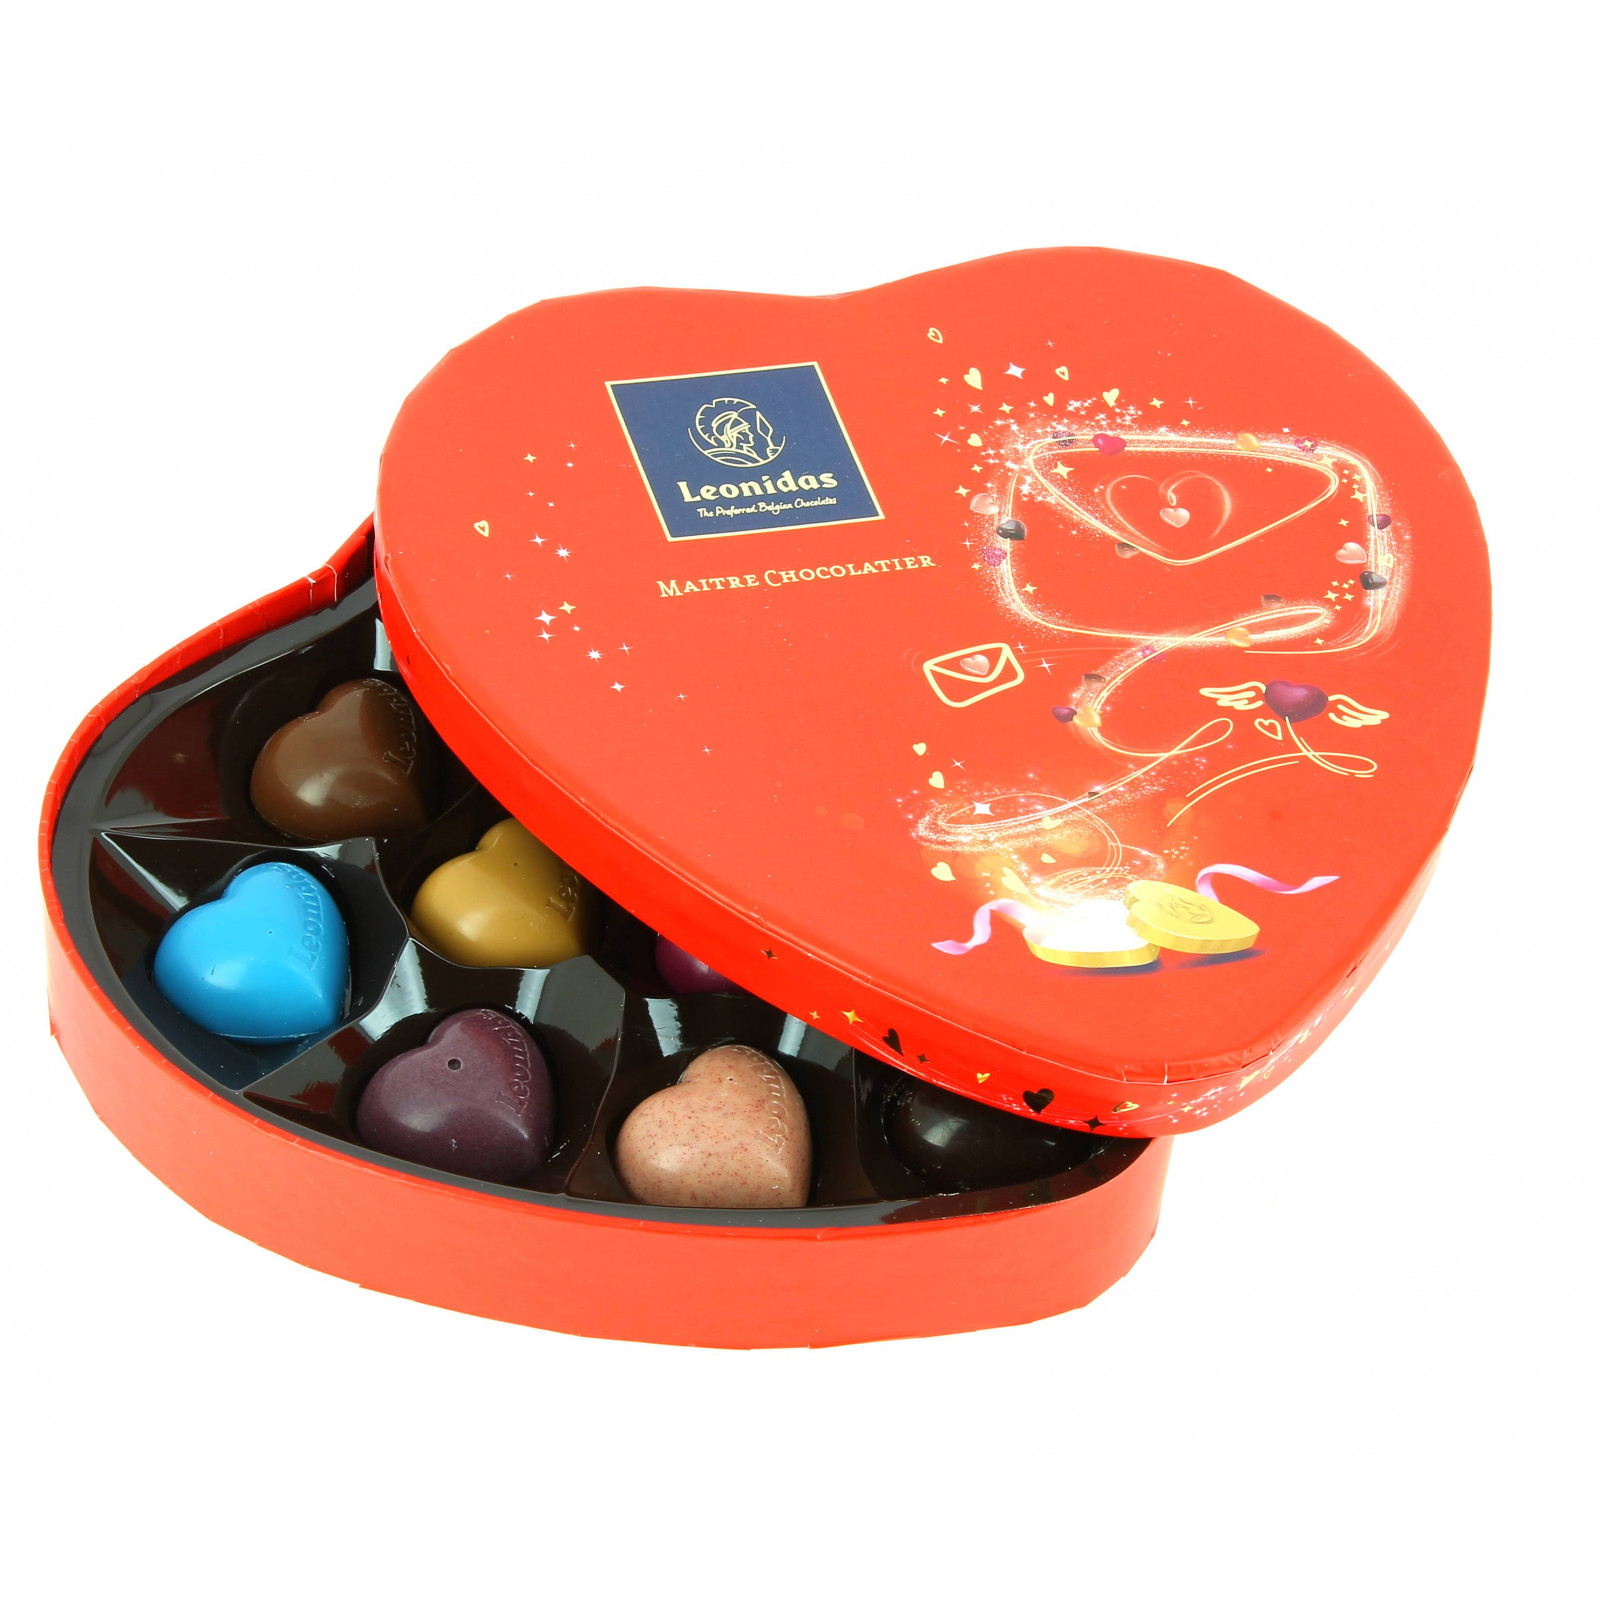 5 coffrets chocolats à s'offrir pour la Saint-Valentin